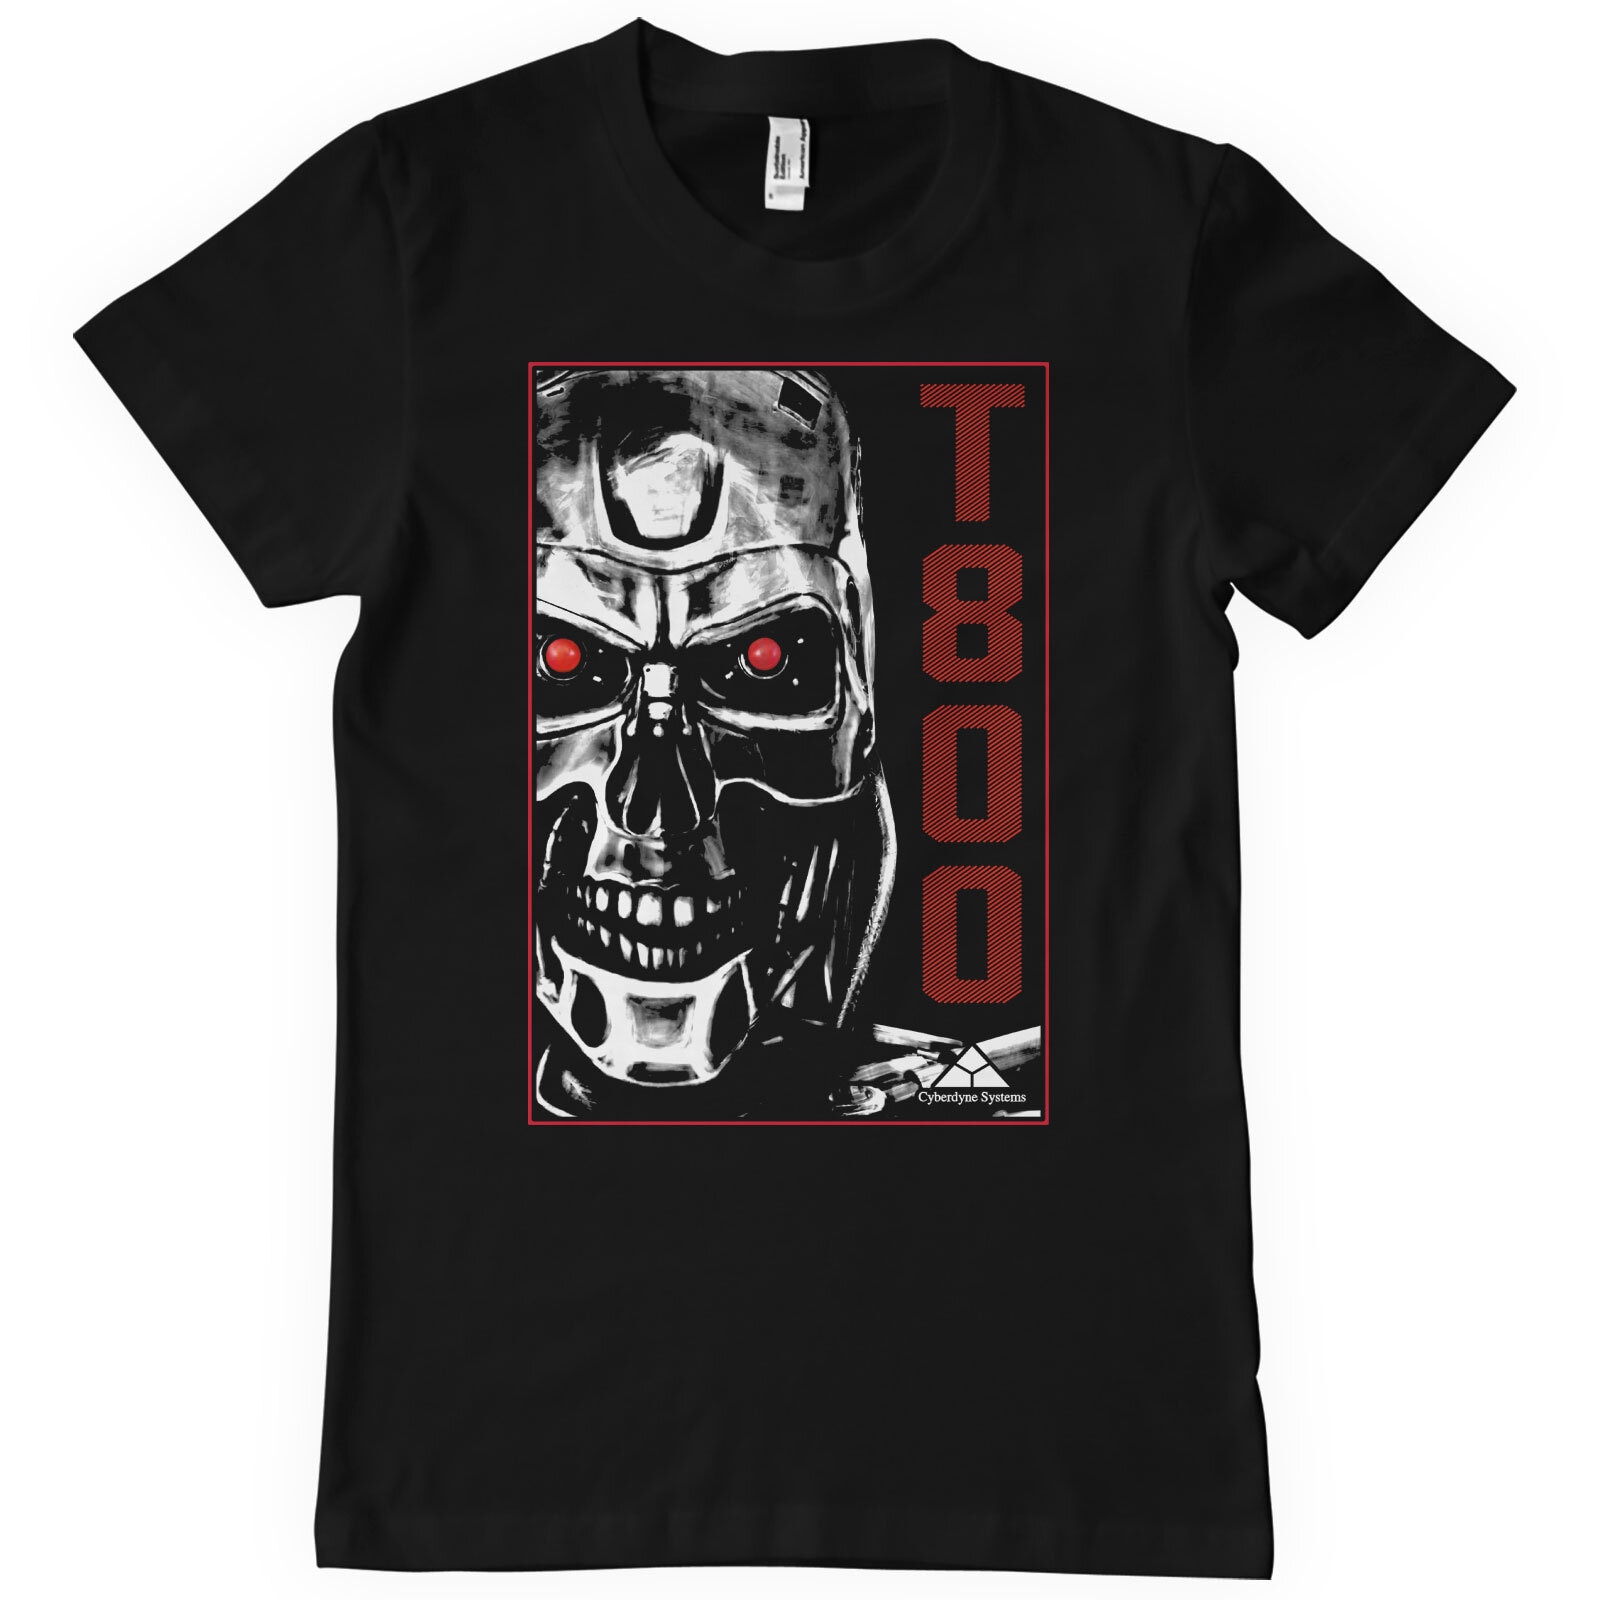 T-800 Machine T-Shirt